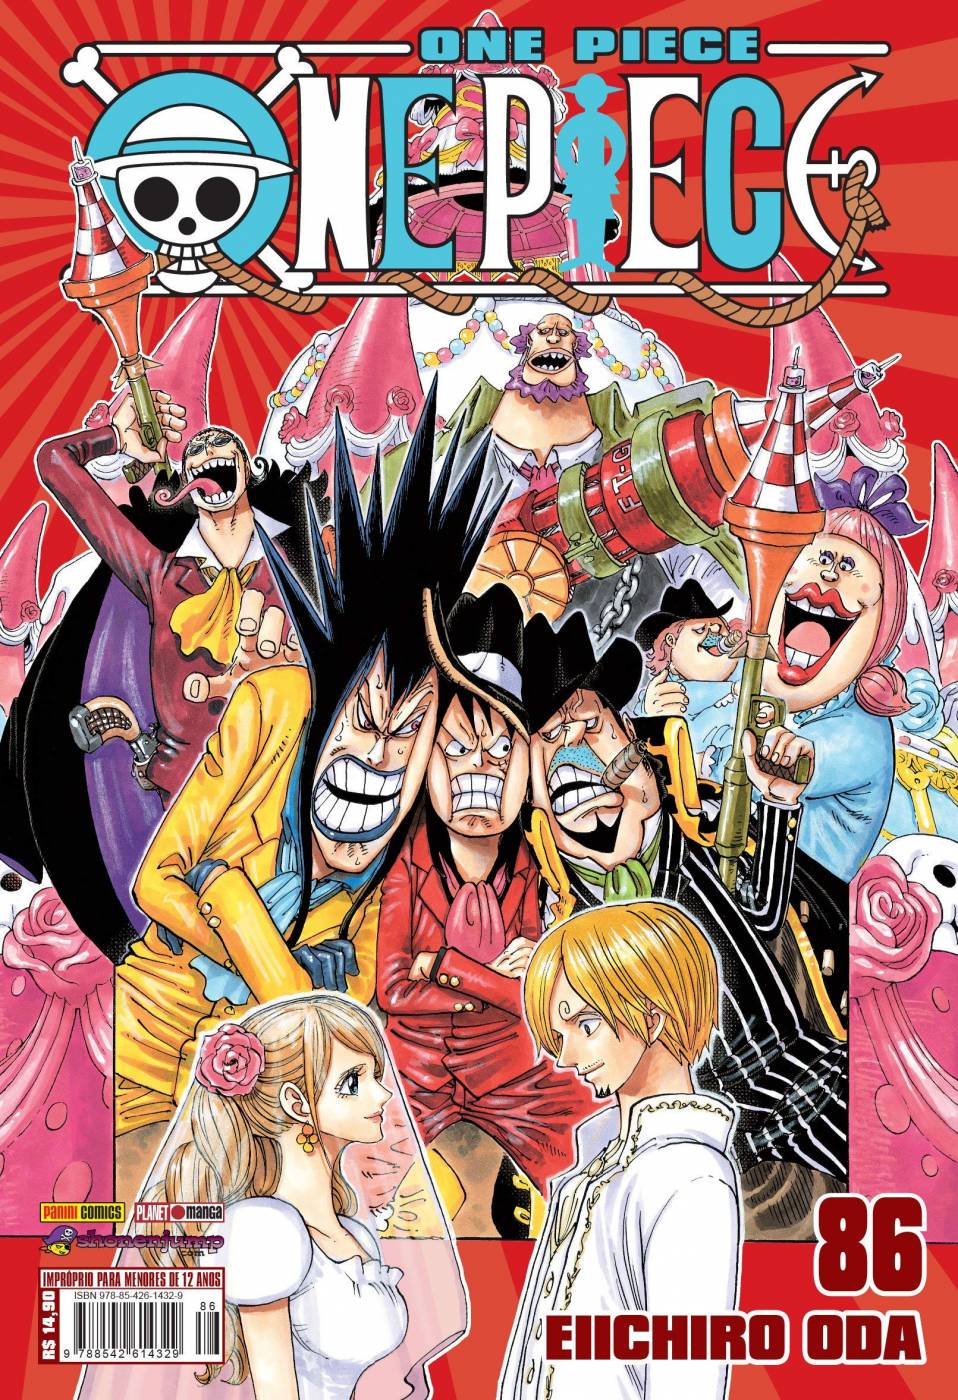 Eiichiro Oda, criador de One Piece, cria arte de JoJo's Bizarre Adventure